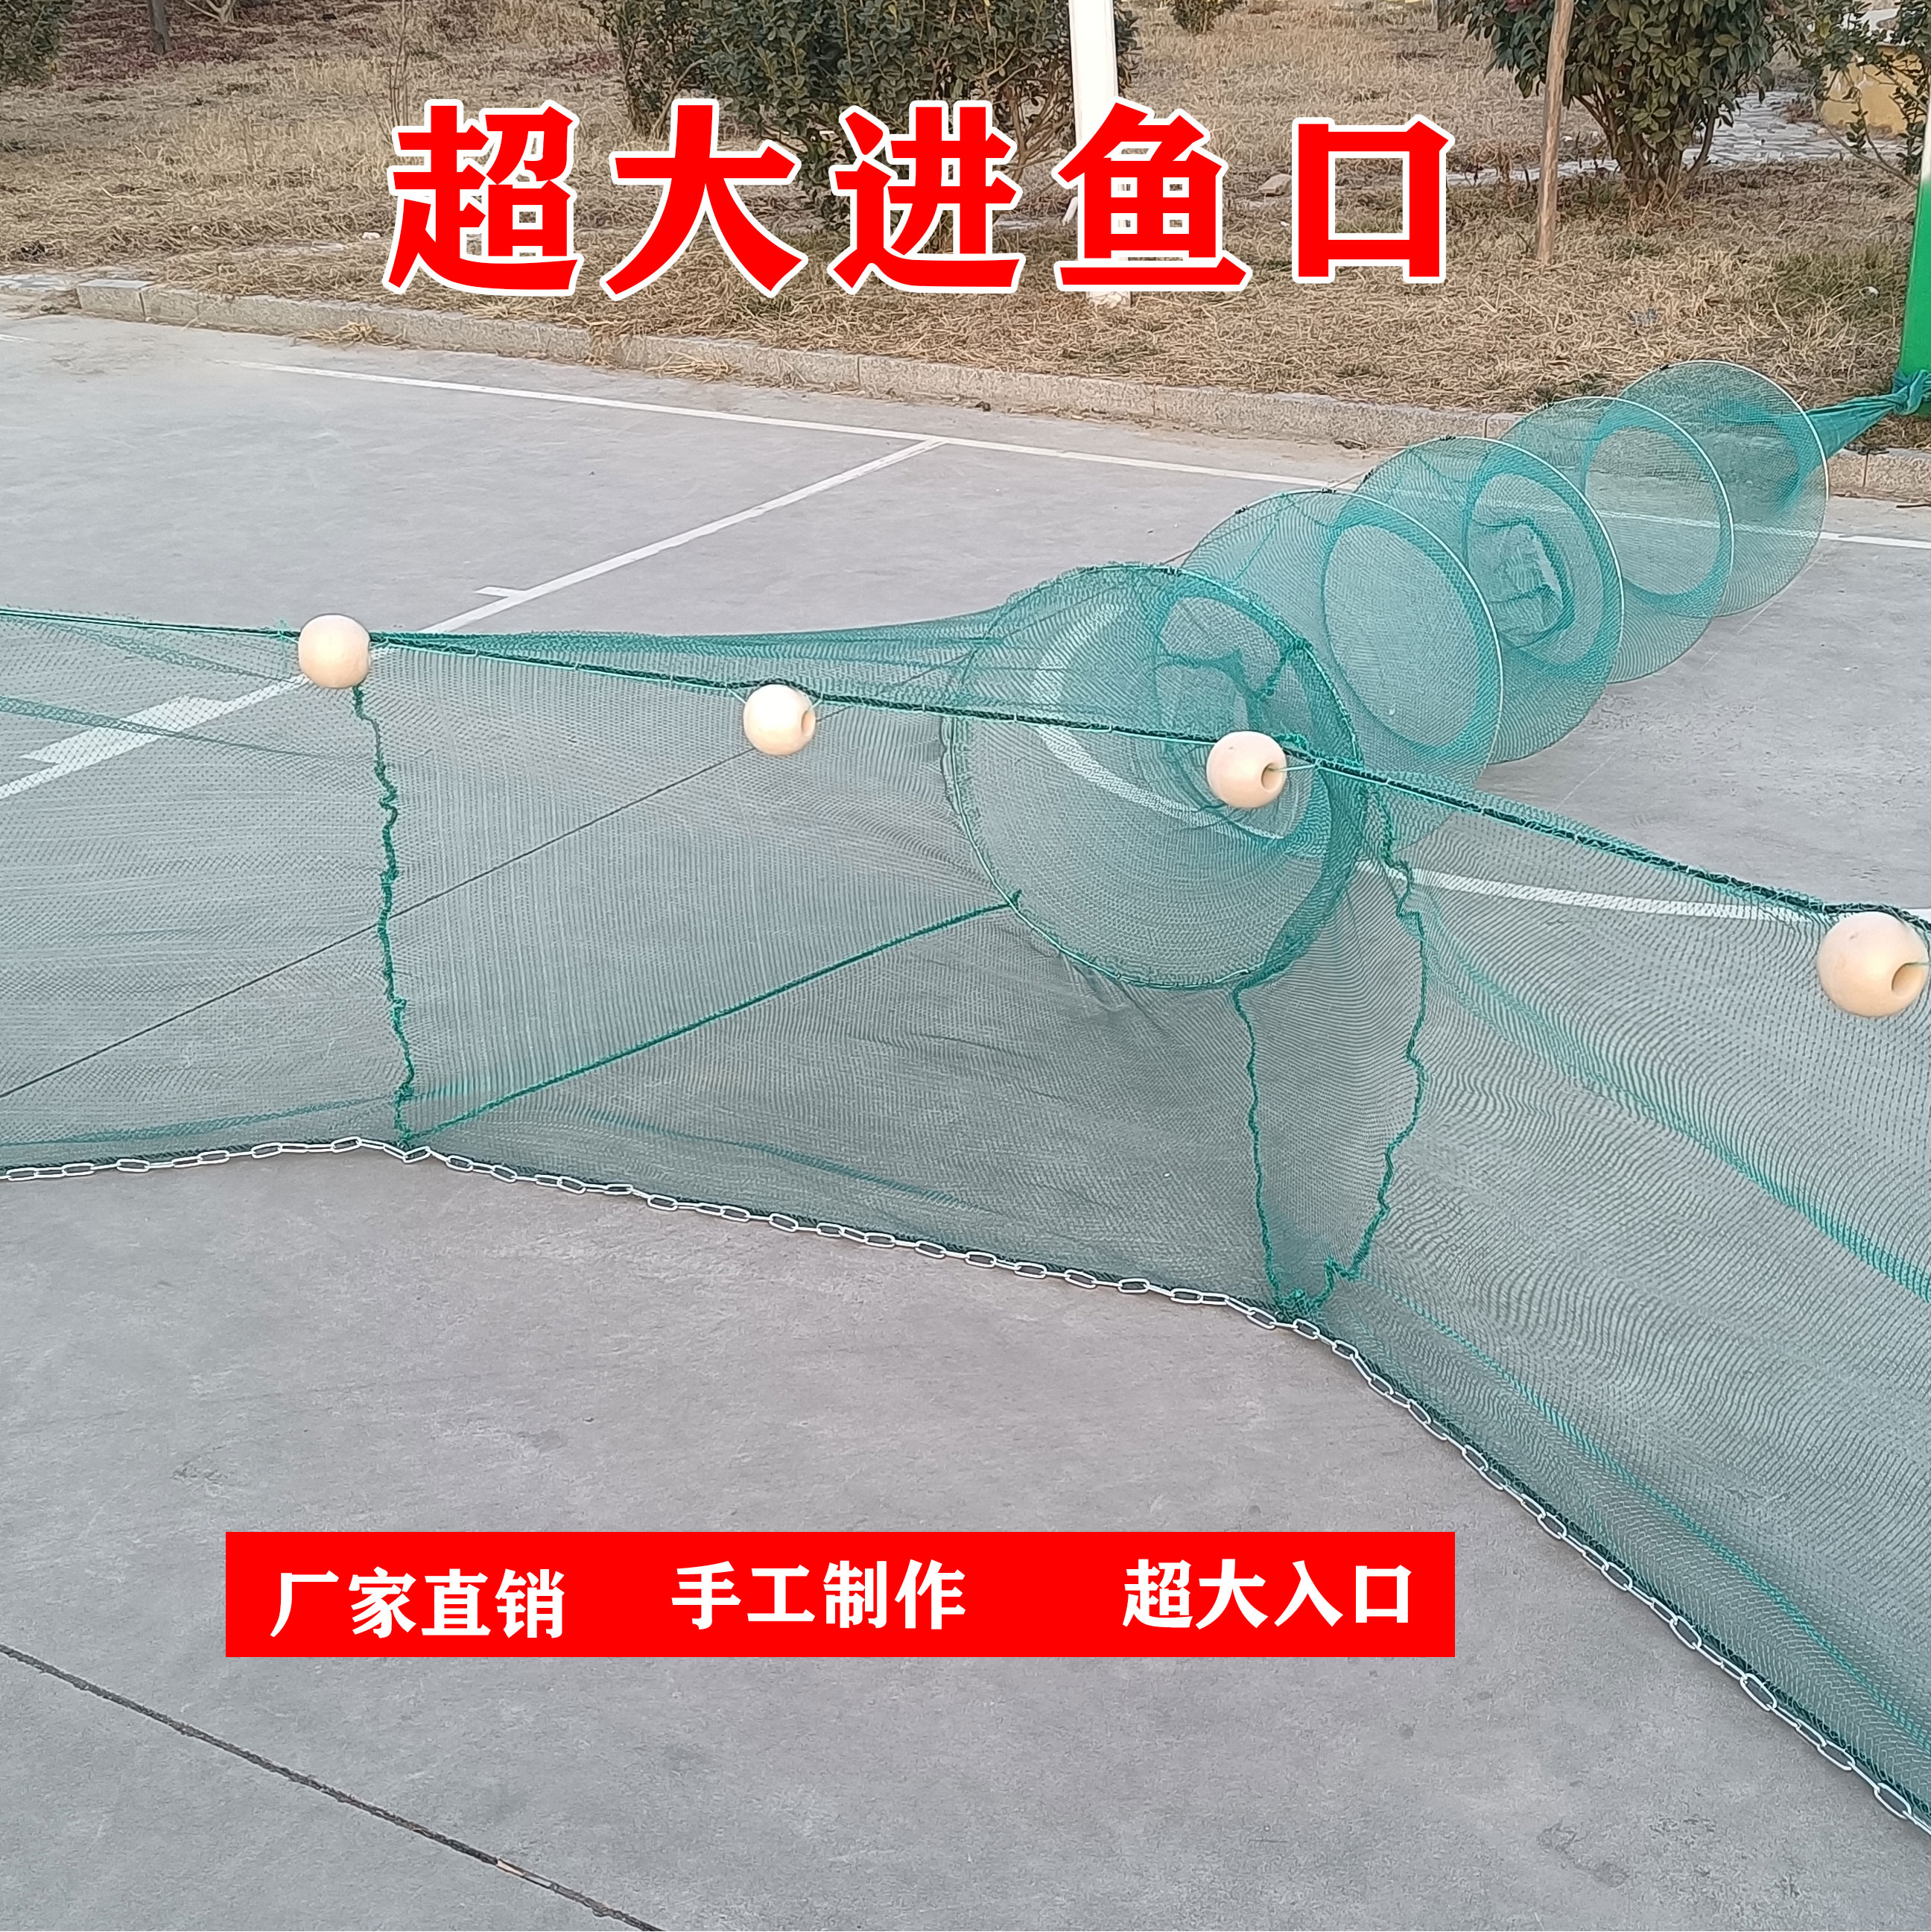 カスタマイズ可能な漁網、漁籠、折りたたみ網、川籠、魚のいる池、トラ口網、魚網、引き網、8文字トロール網